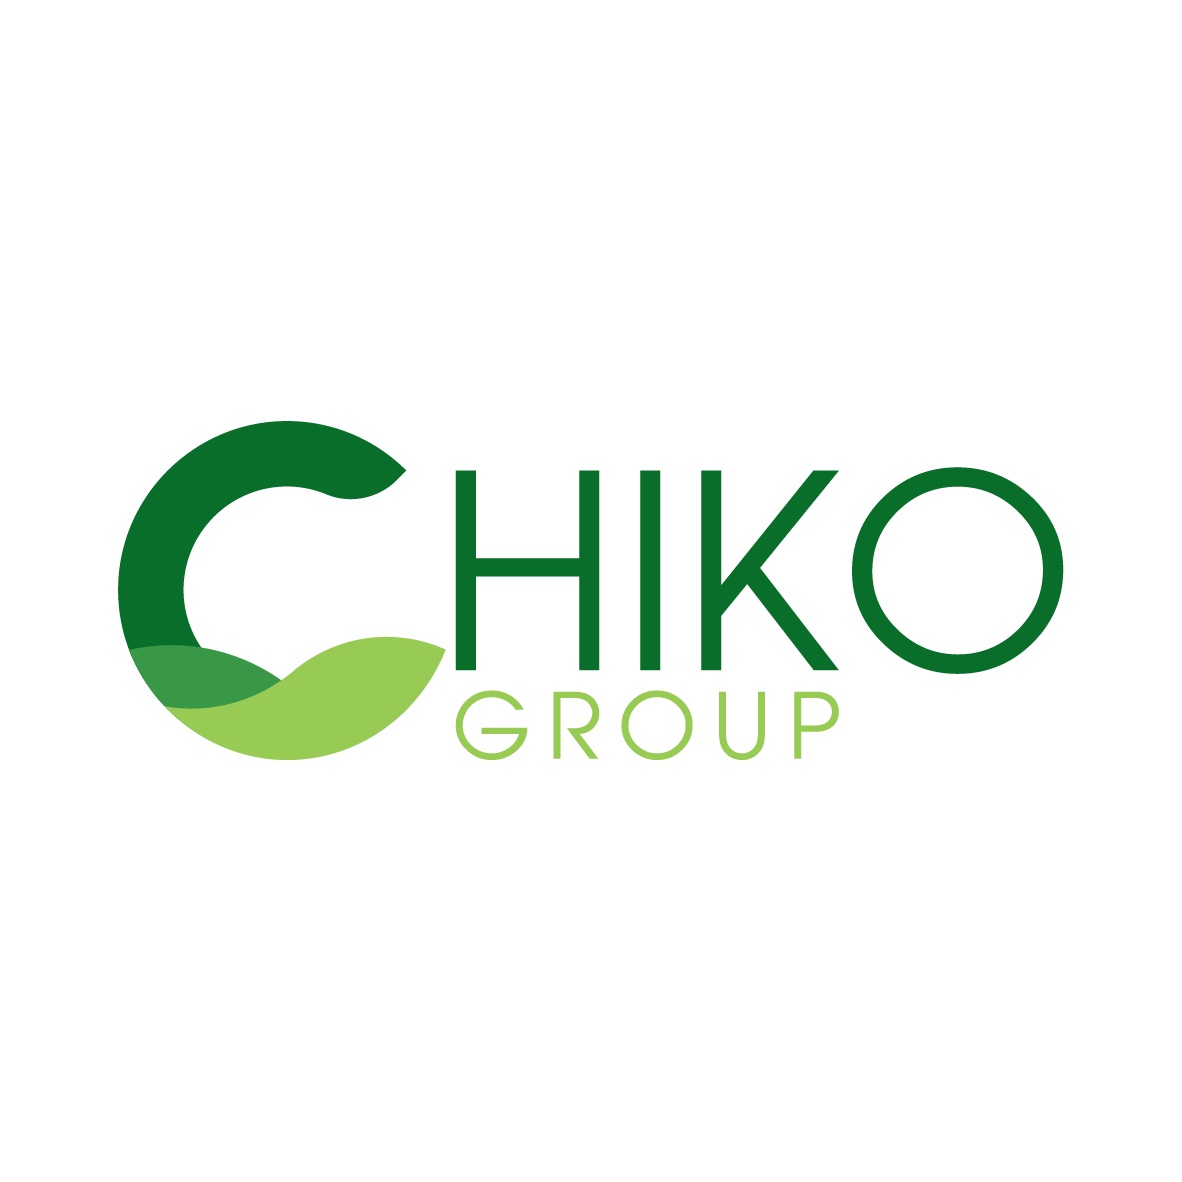 Chiko Group